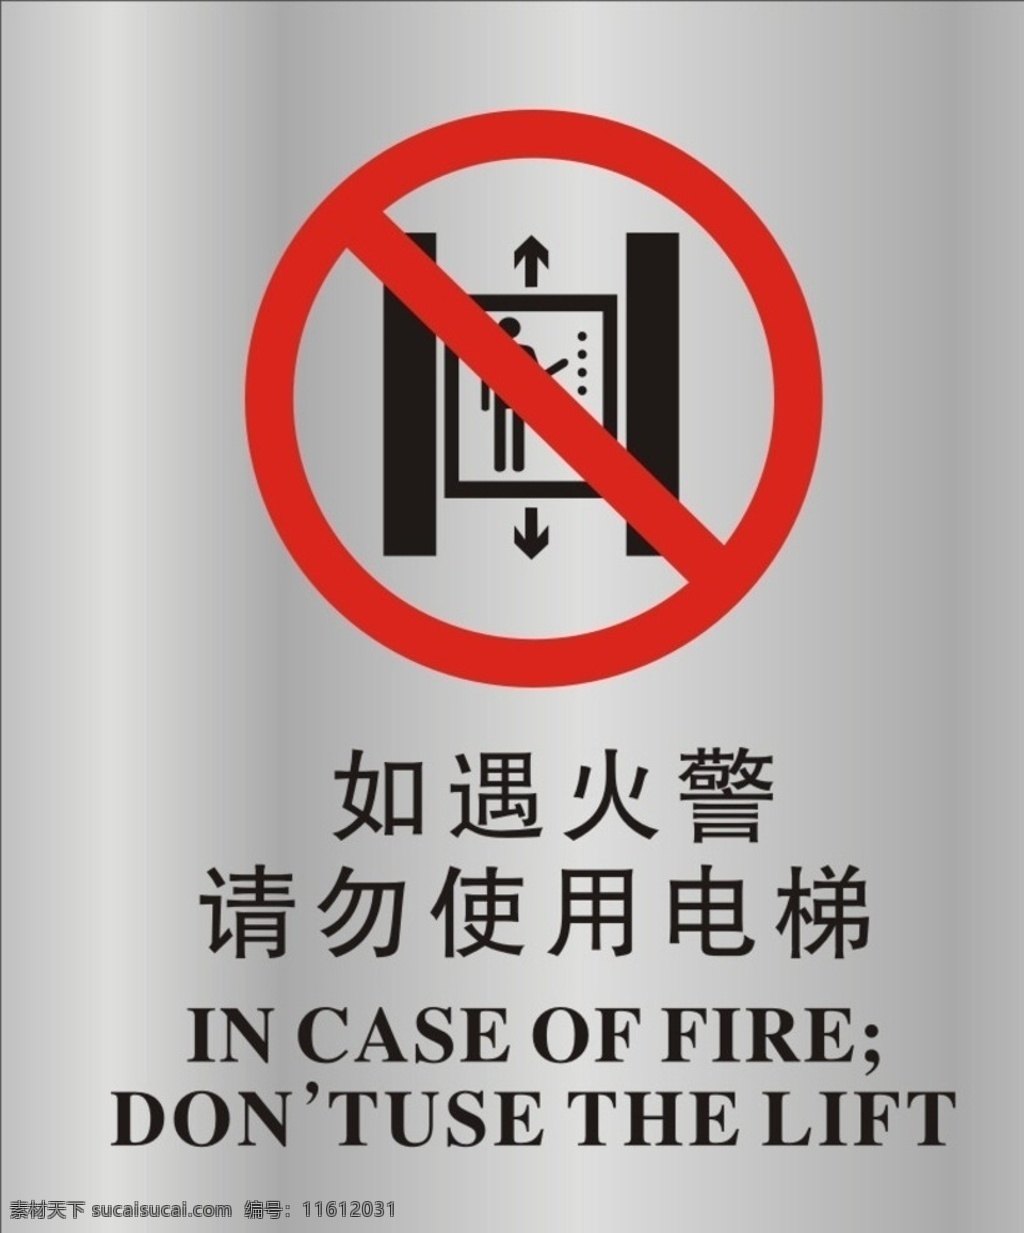 遇 火警 请勿 使用 电梯 如遇火警 请勿使用电梯 标志 公共标识 标志图标 公共标识标志